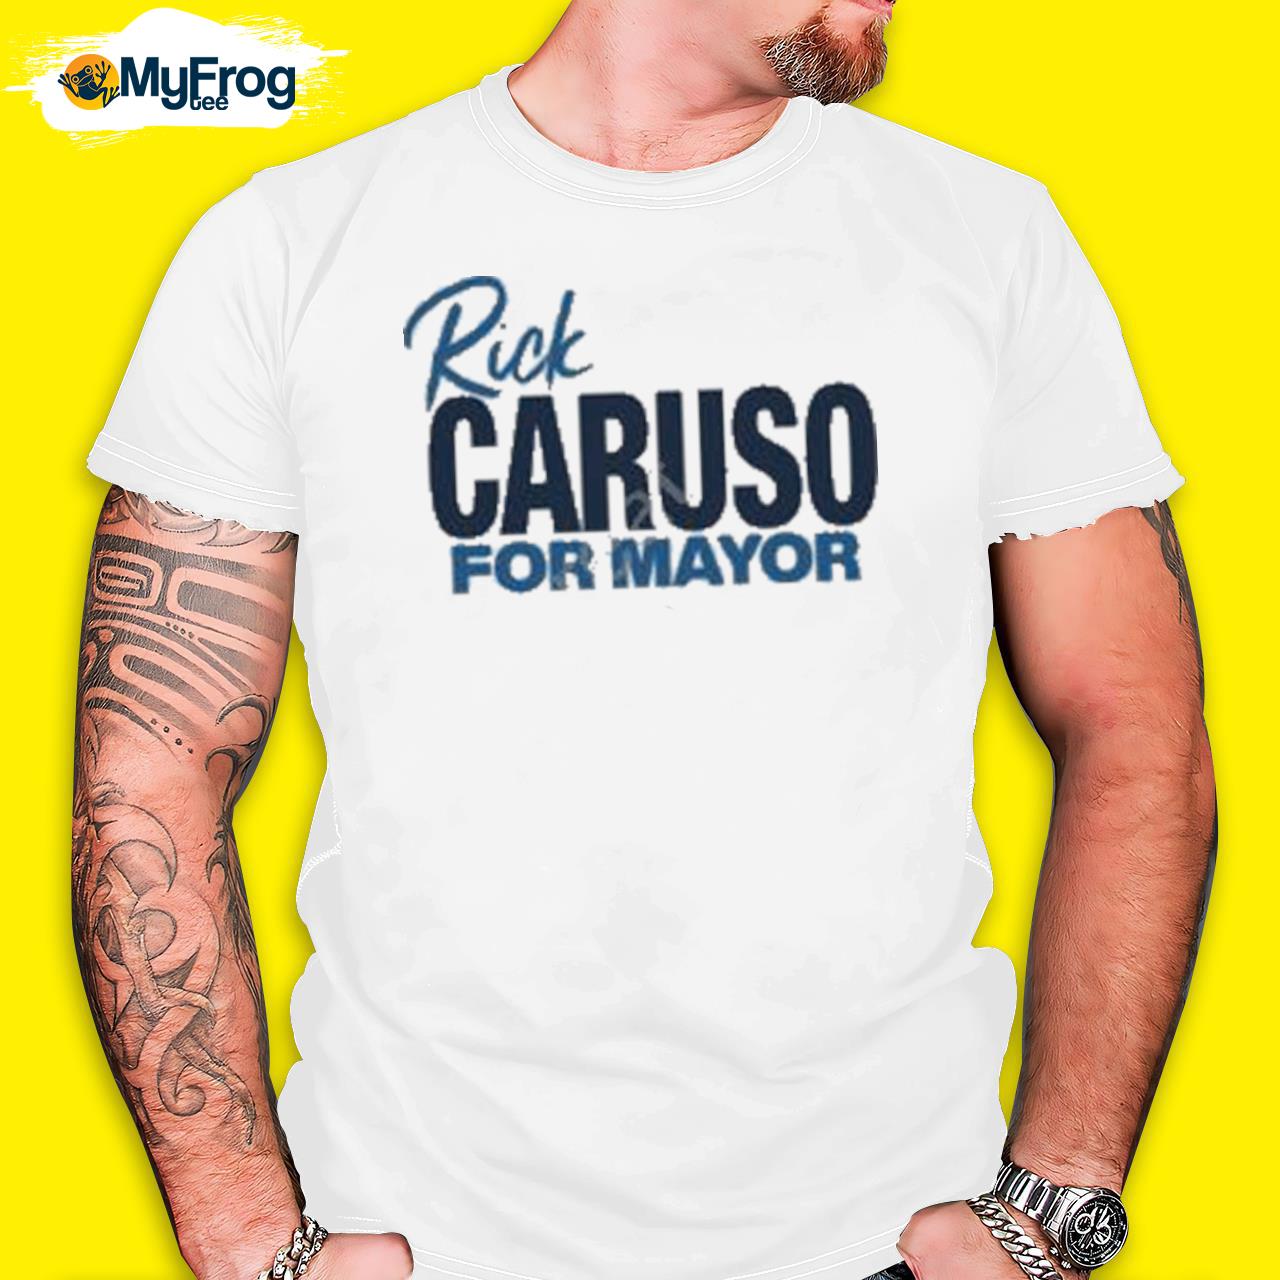 Rick caruso for mayor shirt